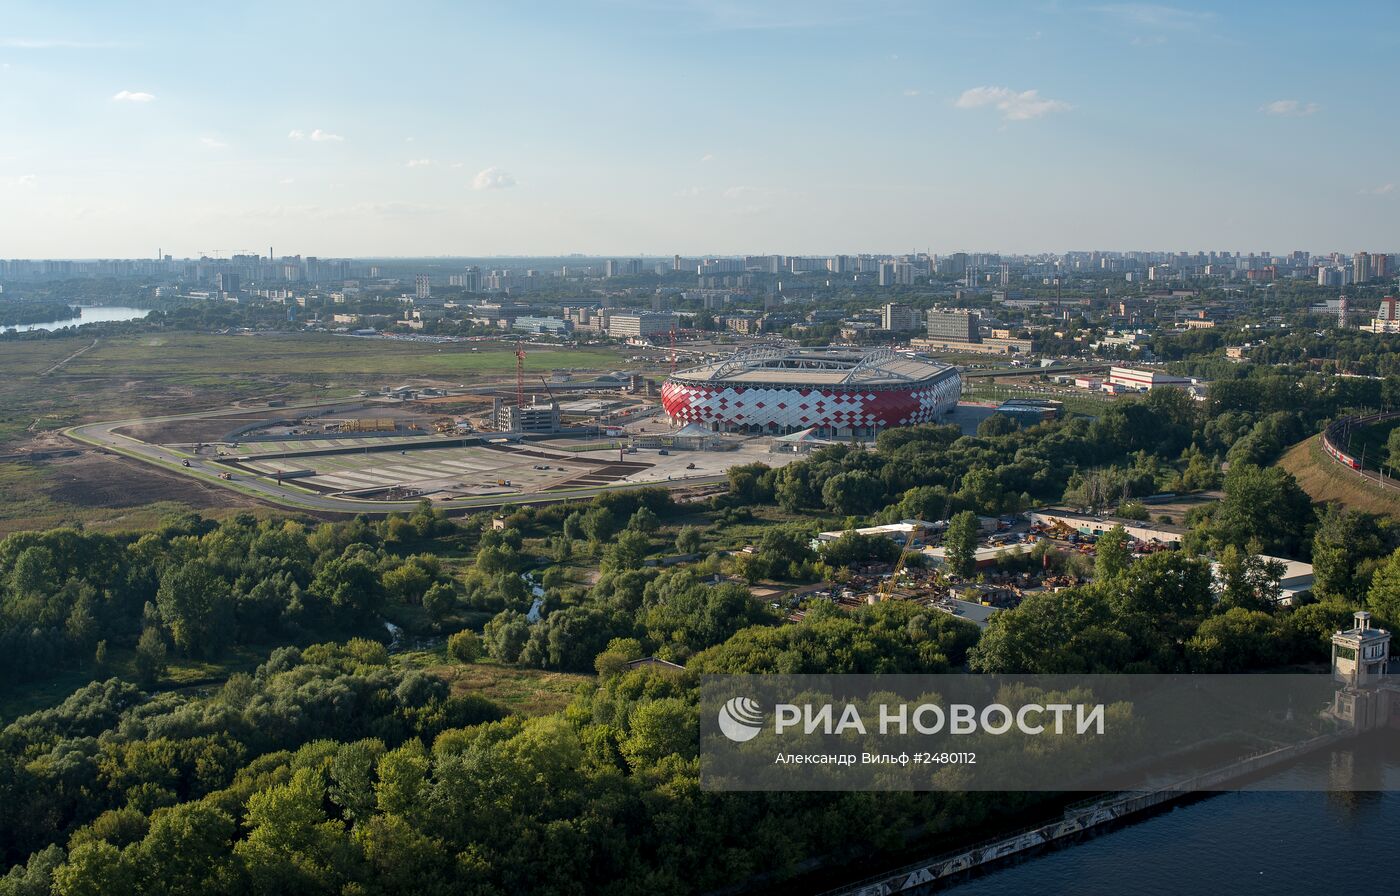 Виды стадиона "Открытие Арена" в Москве